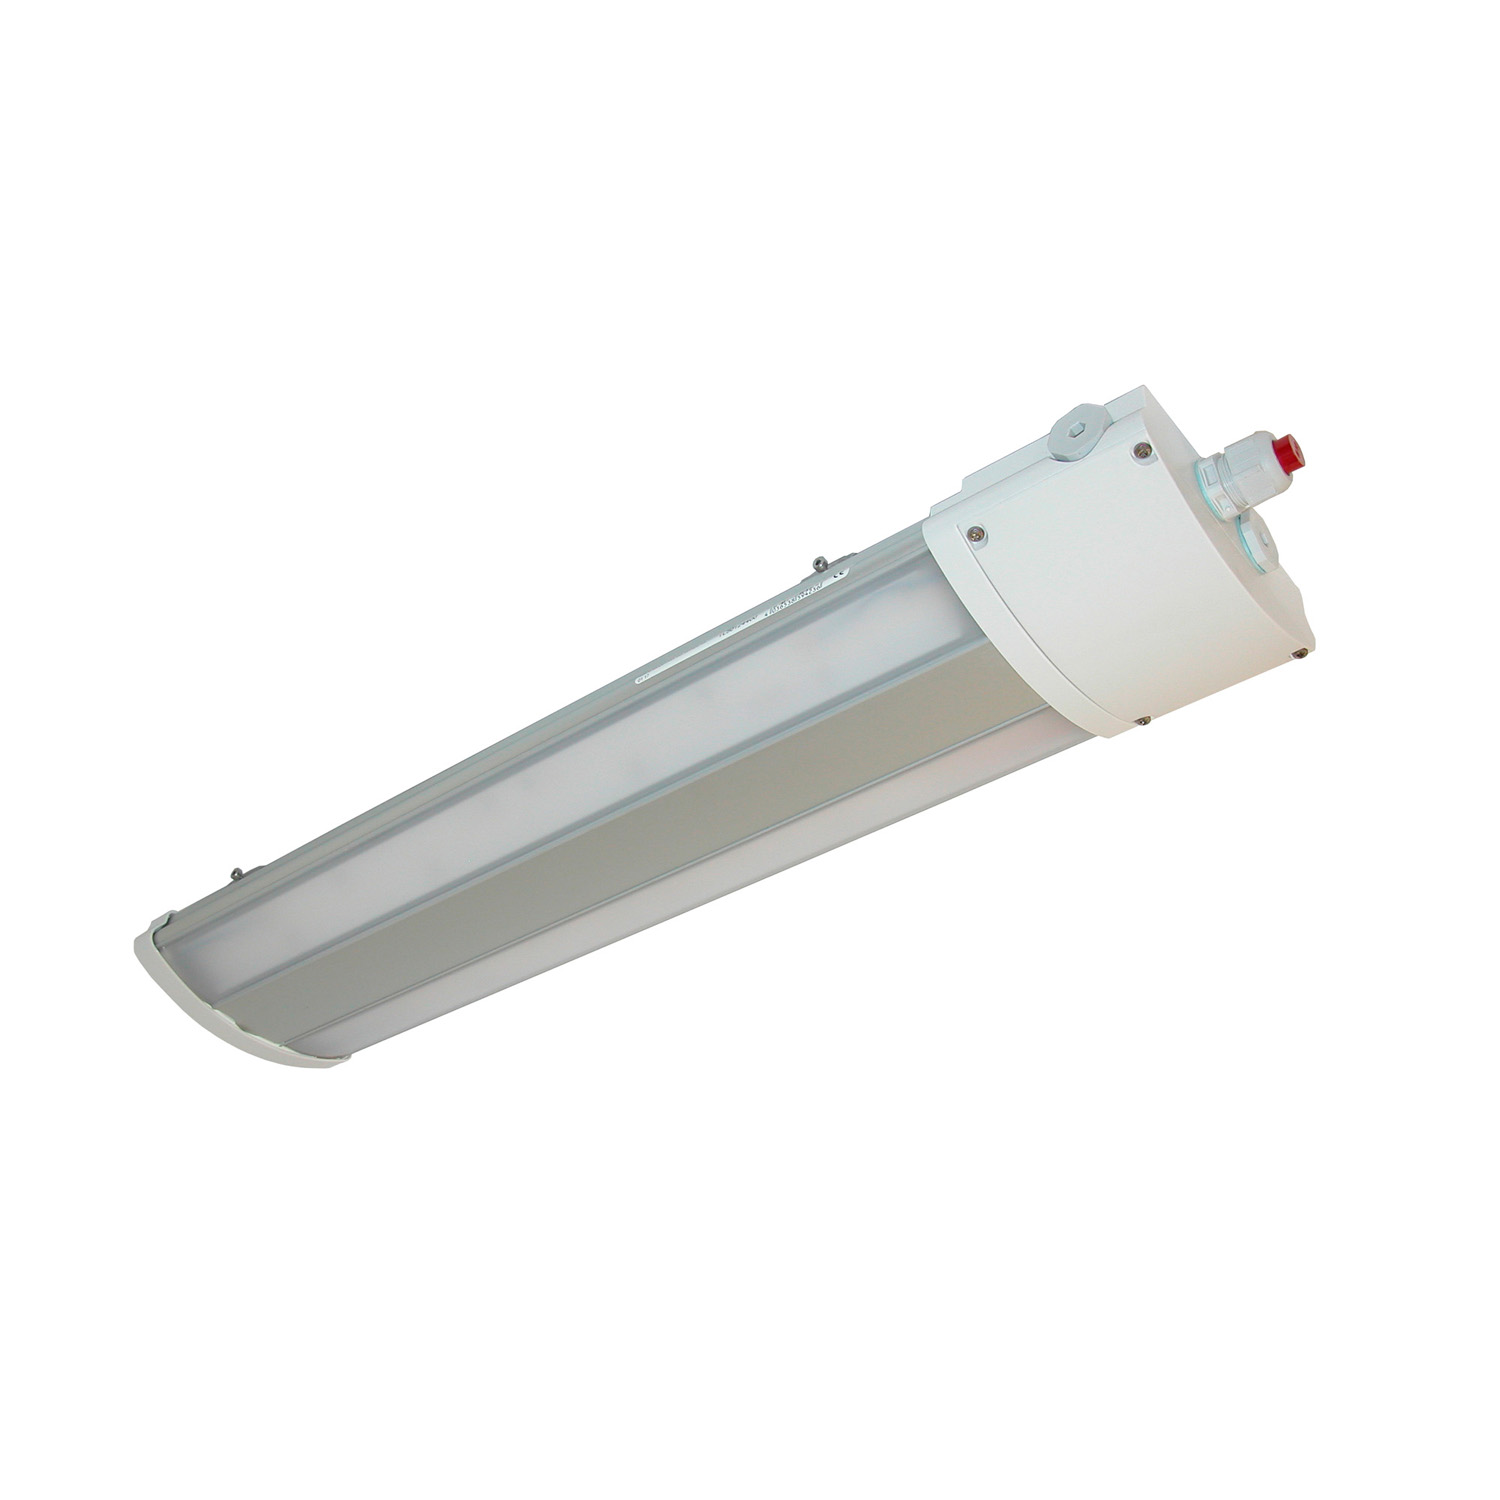 TL50124400 Watertight LED luminaire multipurpose, TL50 2200 840 220-240 M25 AS